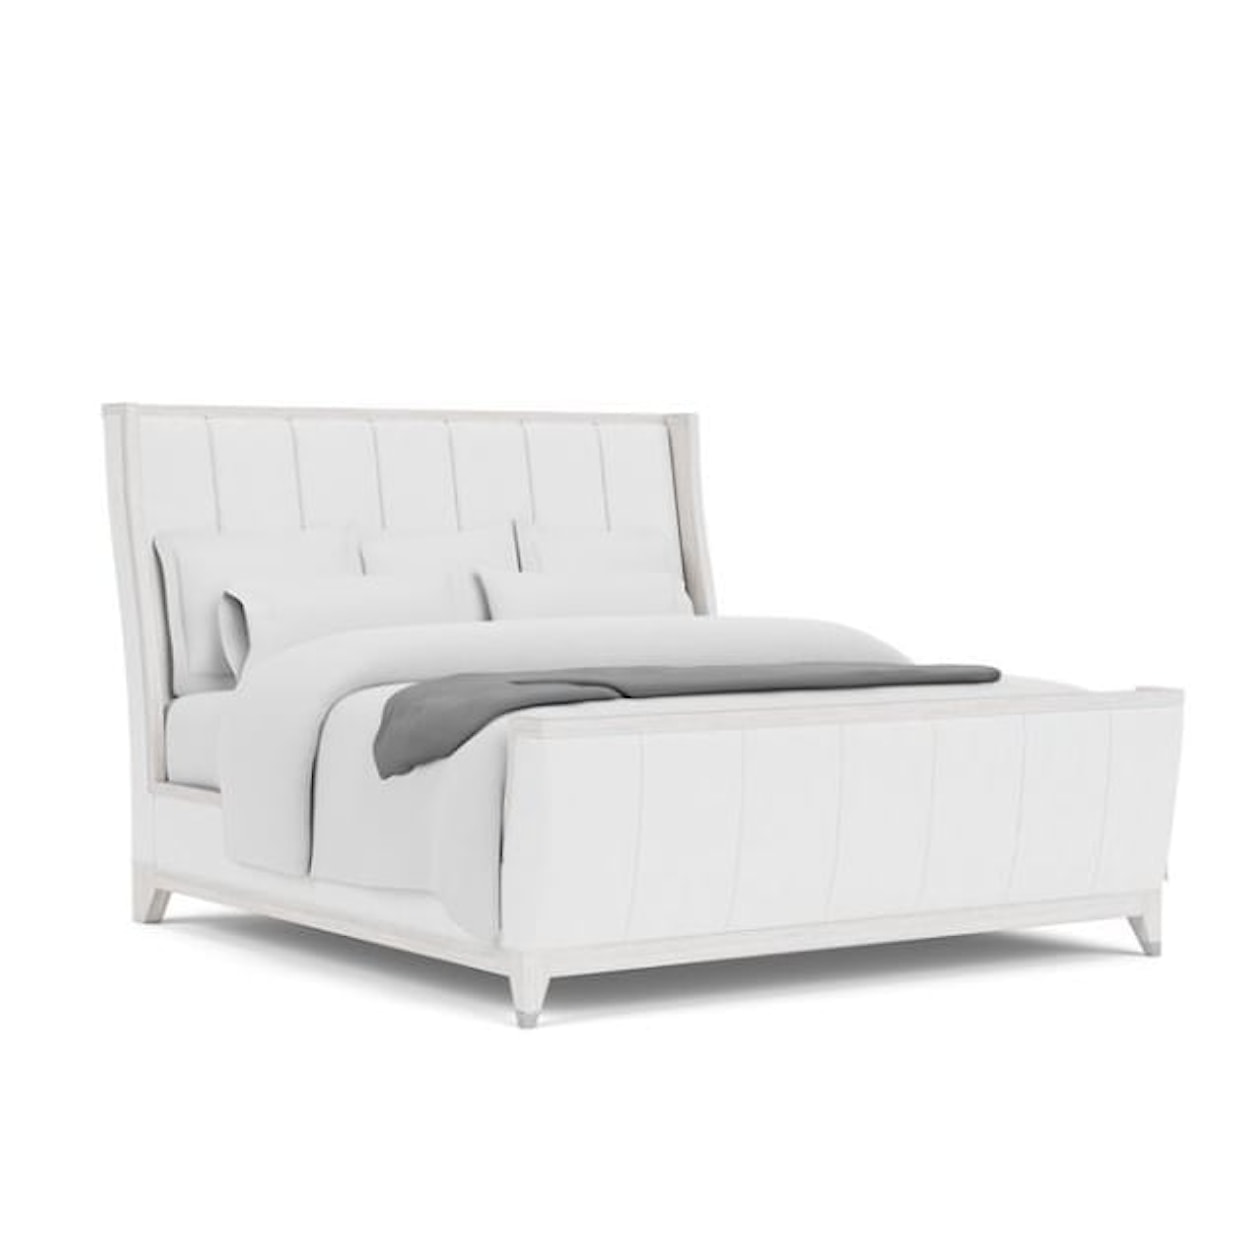 Riverside Furniture Hepburn Queen Upholstered Bed